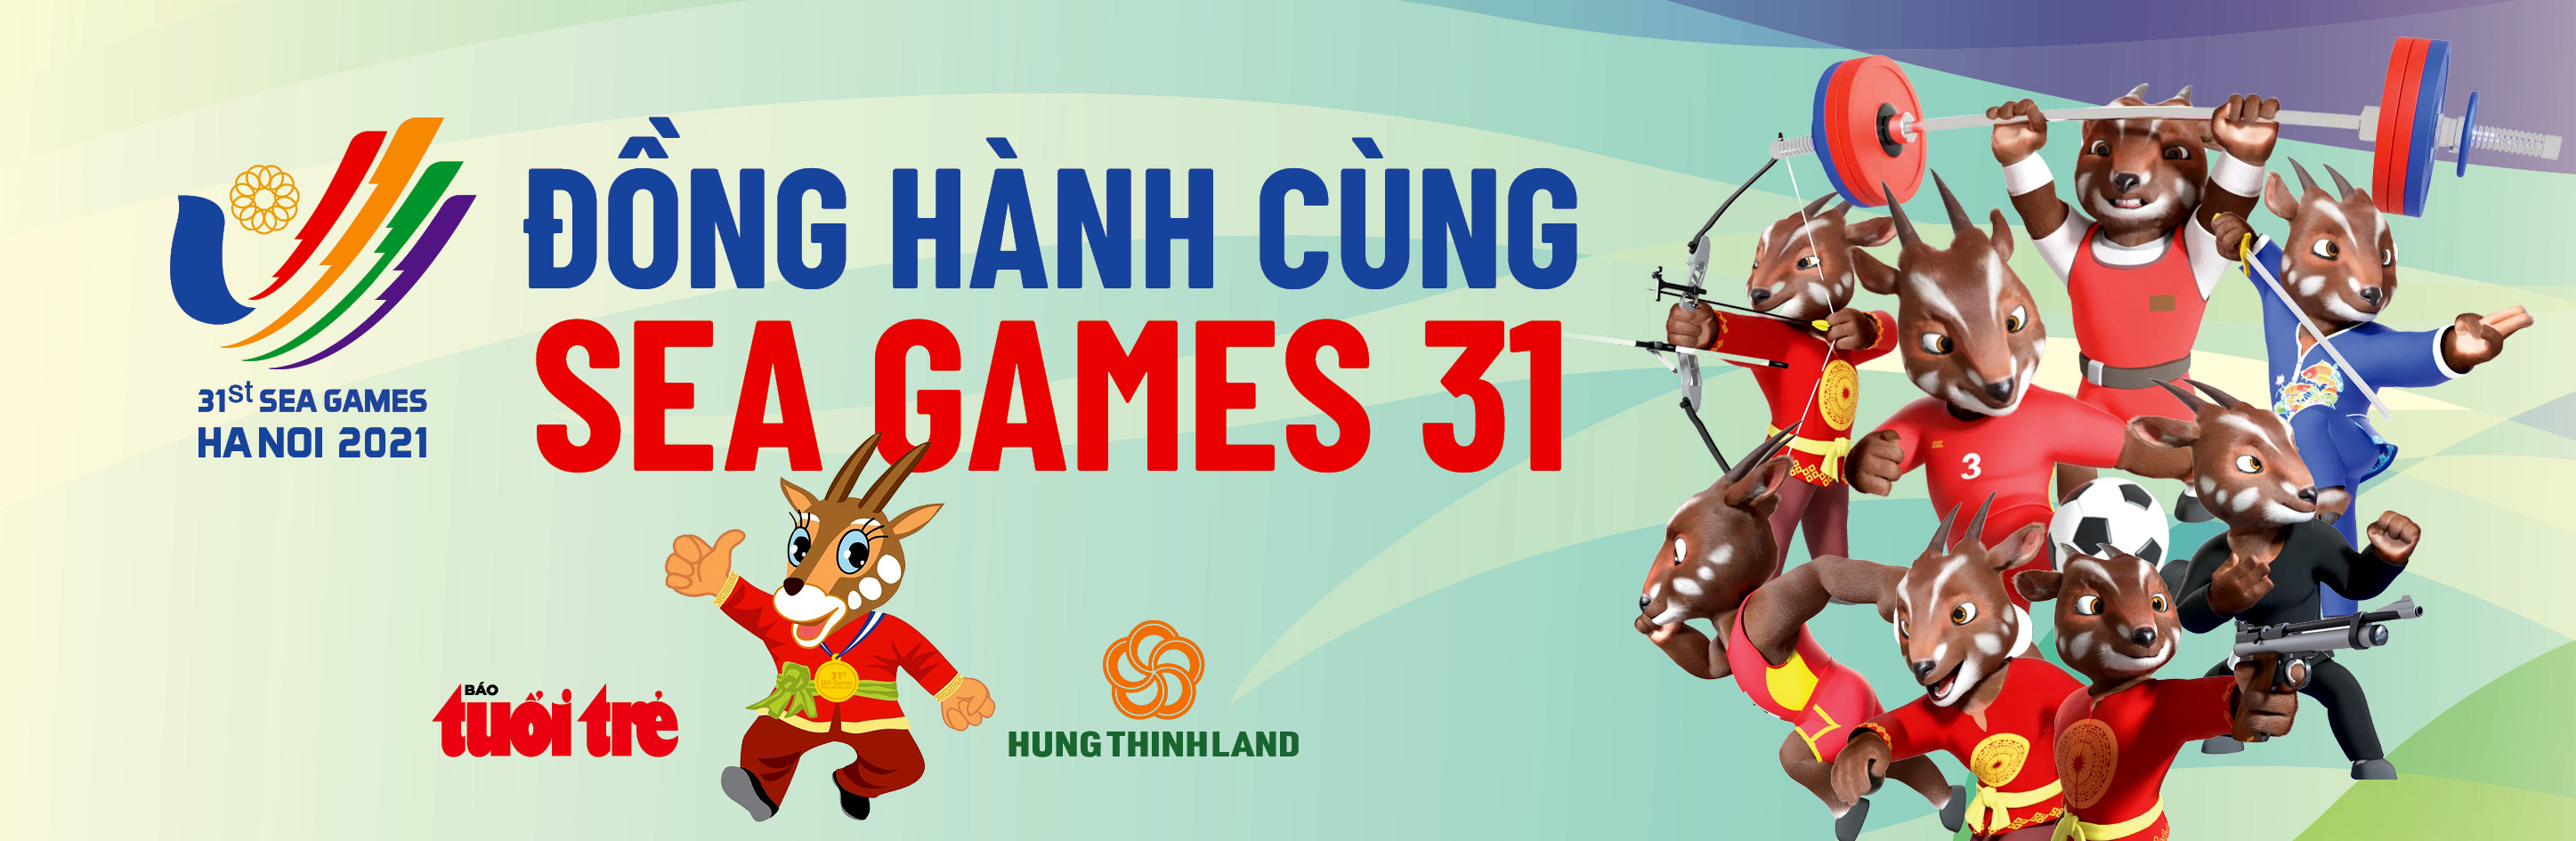 Tuyển nữ Việt Nam nhận cú hích 2 tỉ đồng trước trận chung kết SEA Games 31